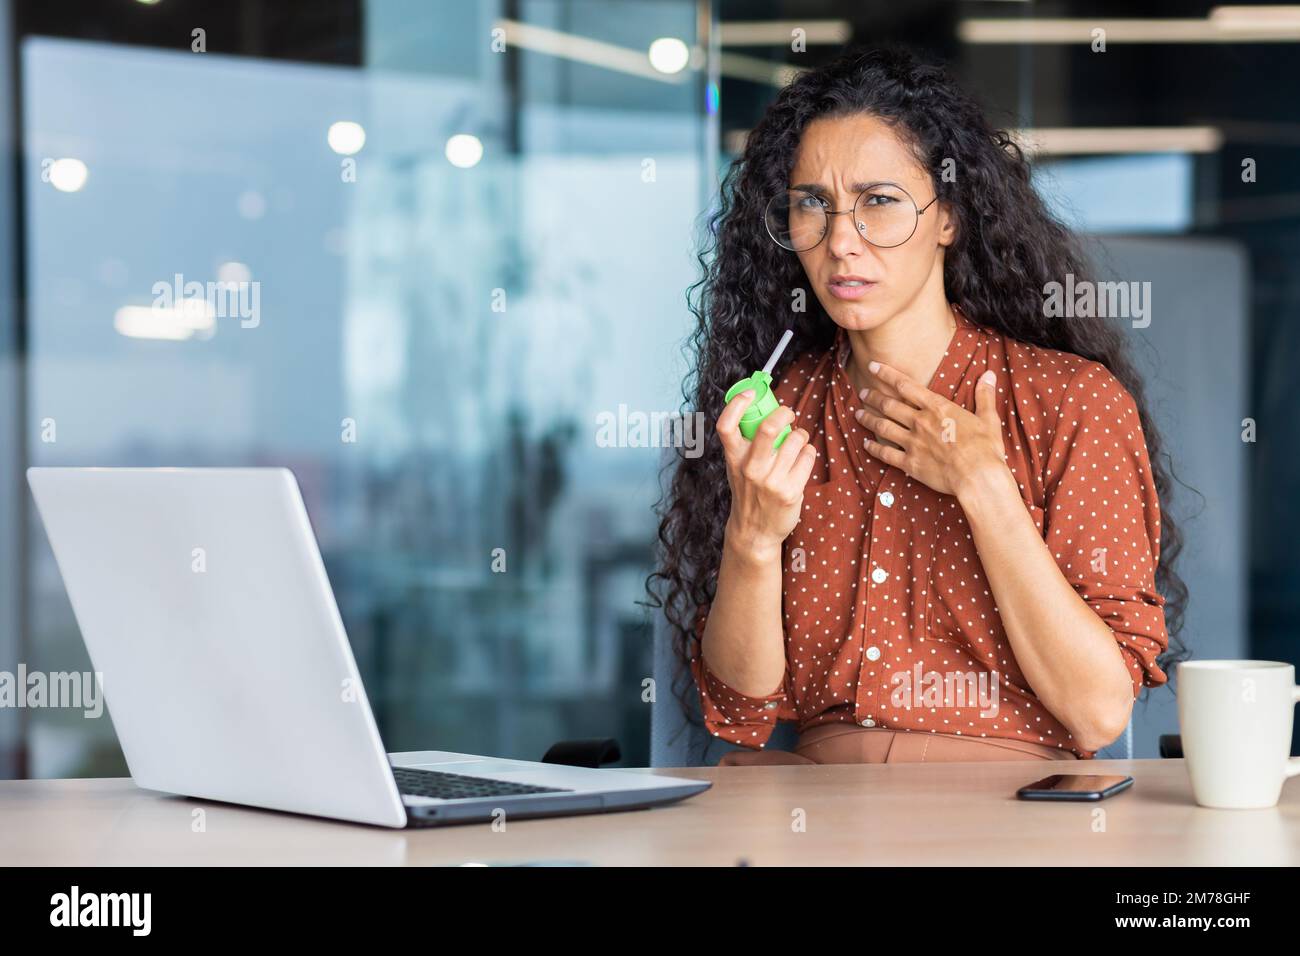 Eine junge kranke lateinamerikanische Frau sitzt im Büro an einem Tisch mit einem Laptop und fühlt sich schlecht. Er hustet, bläst sich die Kehle mit einem Aerosol-Medikament. Er hält seine Brust und schaut traurigerweise in die Kamera. Stockfoto